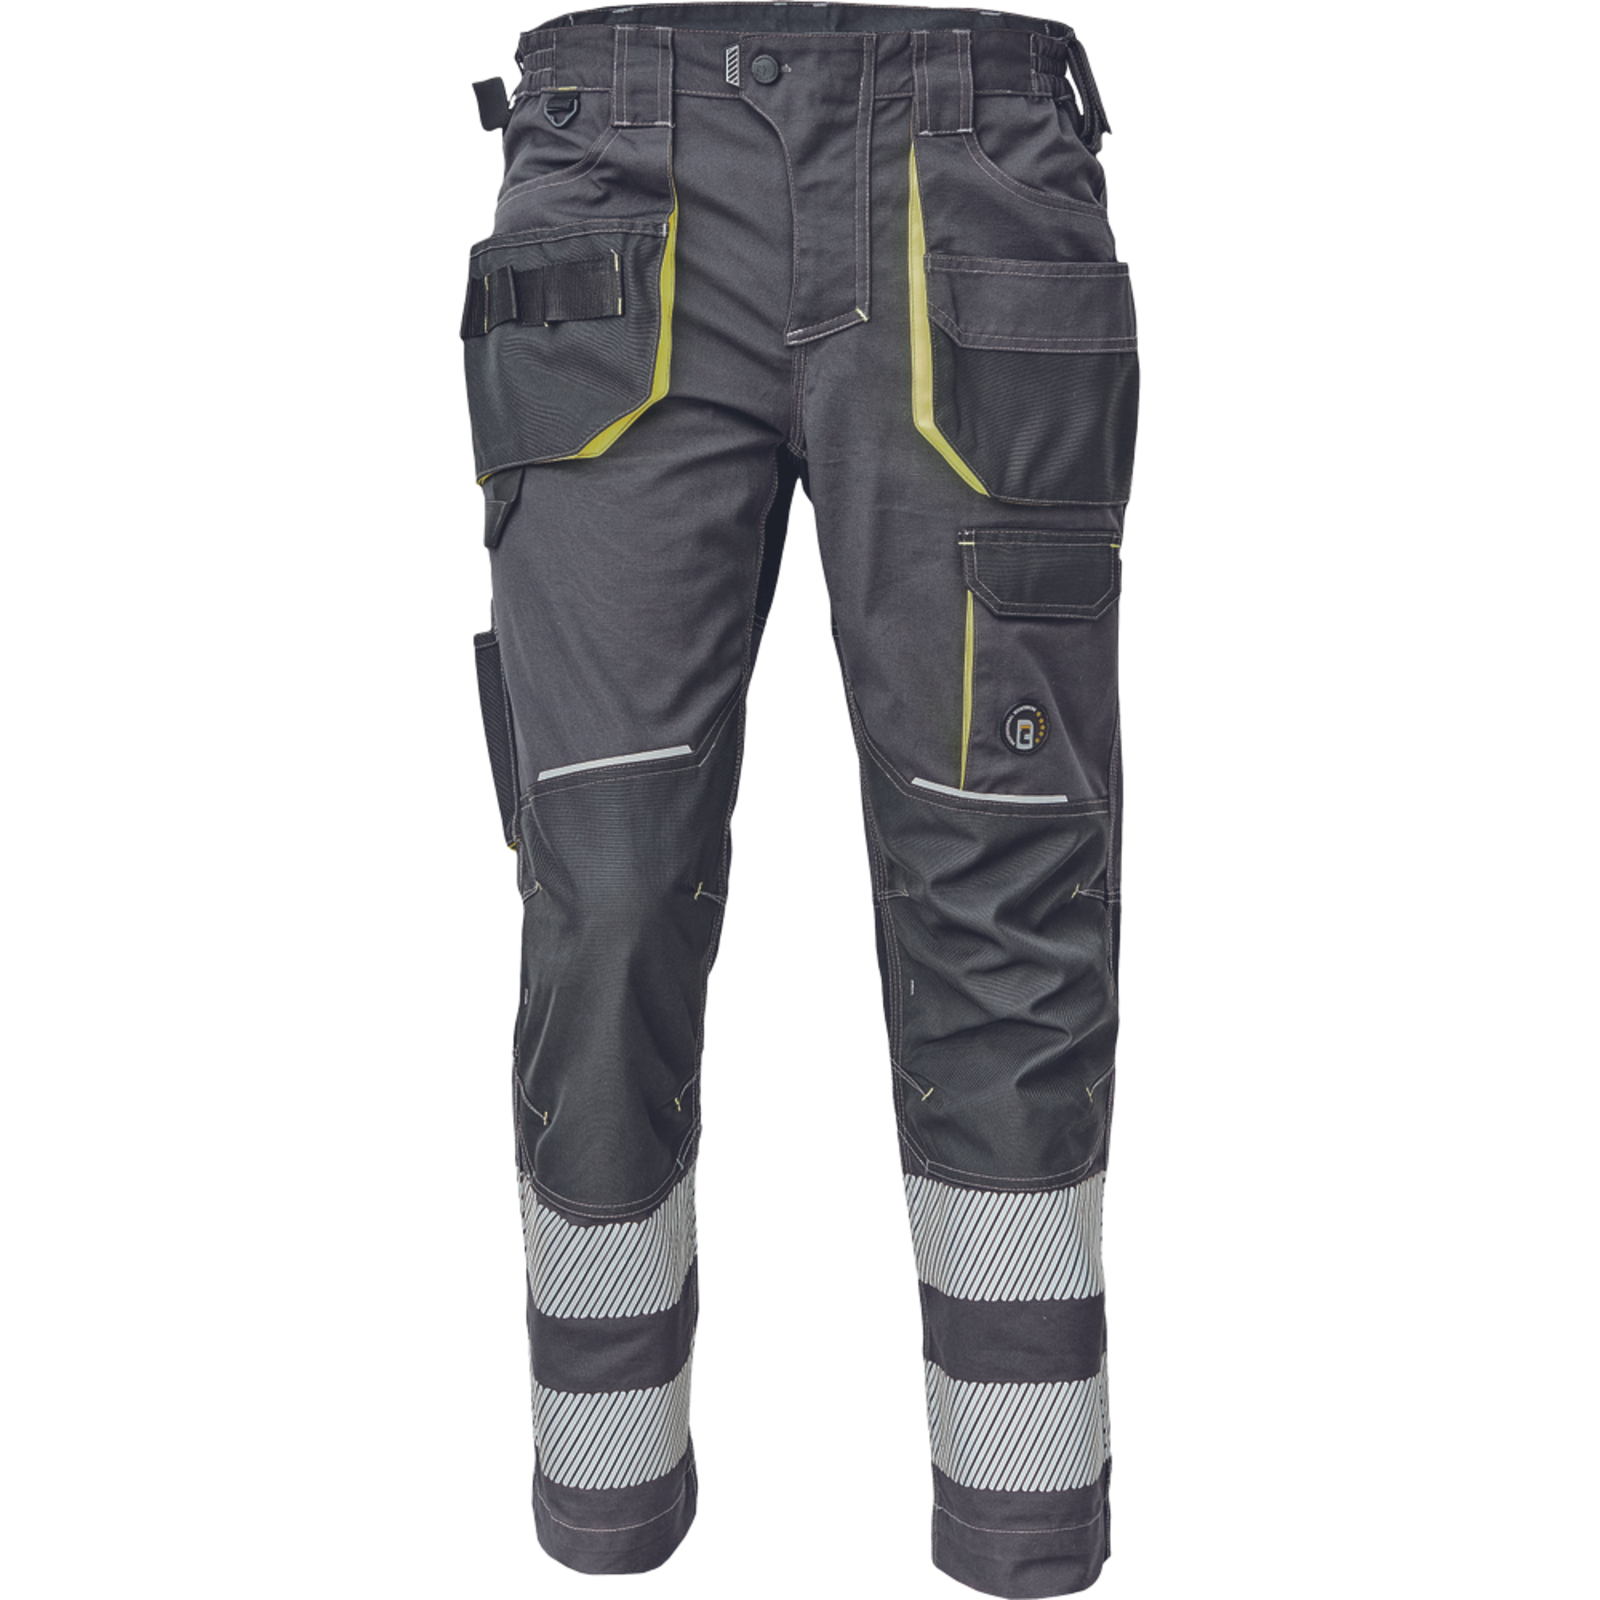 Pracovné nohavice s reflexnými pruhmi Cerva Sheldon RFLX pánske - veľkosť: 44, farba: antracit/žltá